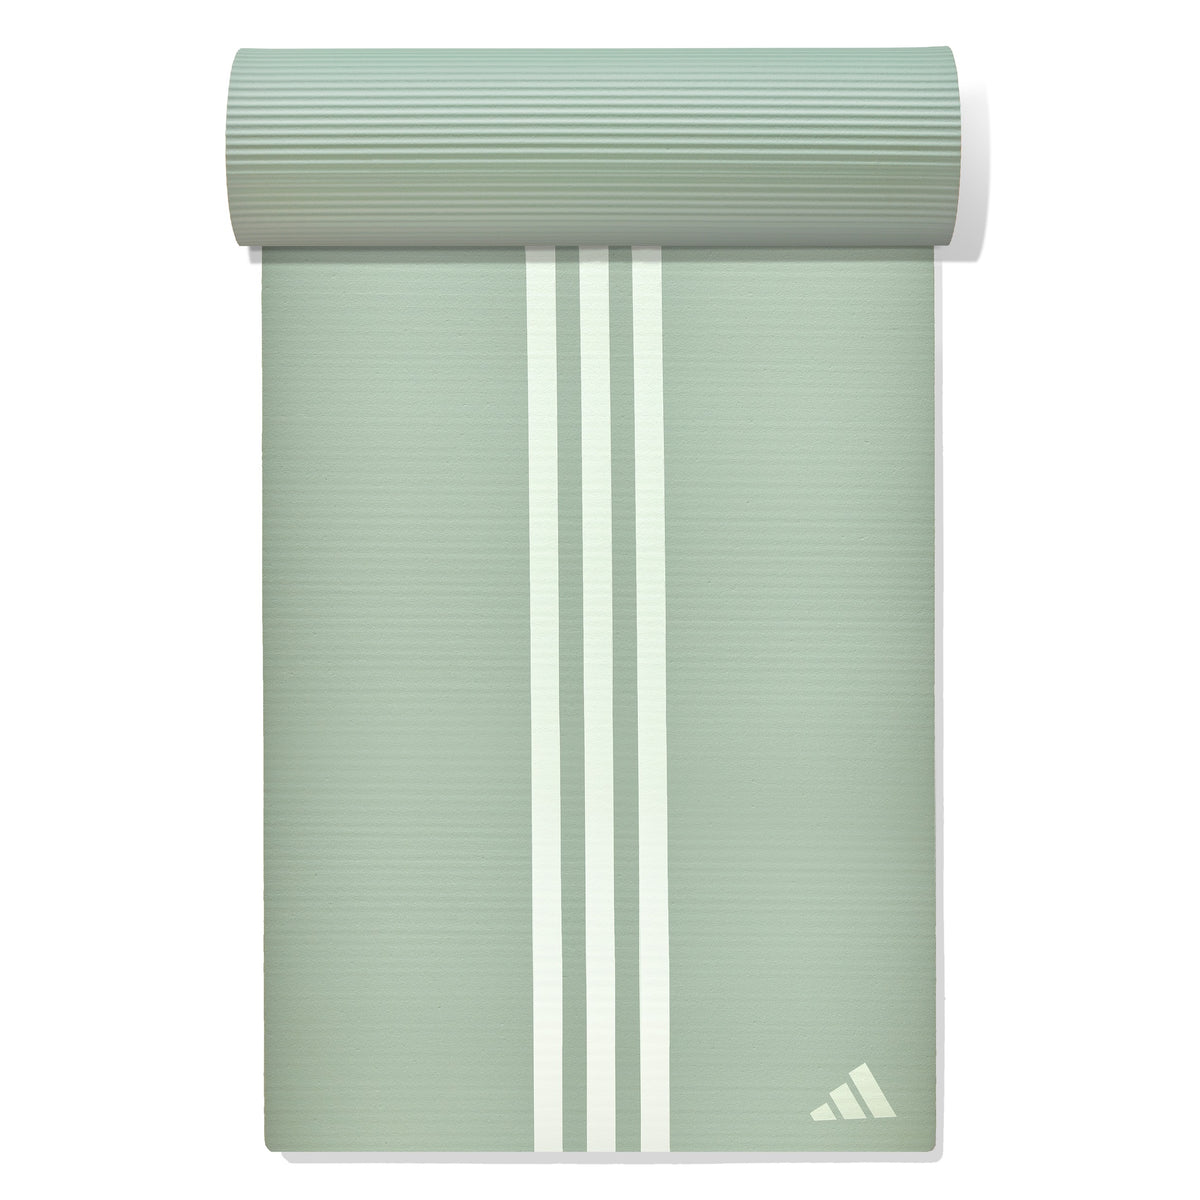 Adidas Yoga Mat 8mm Linen Green